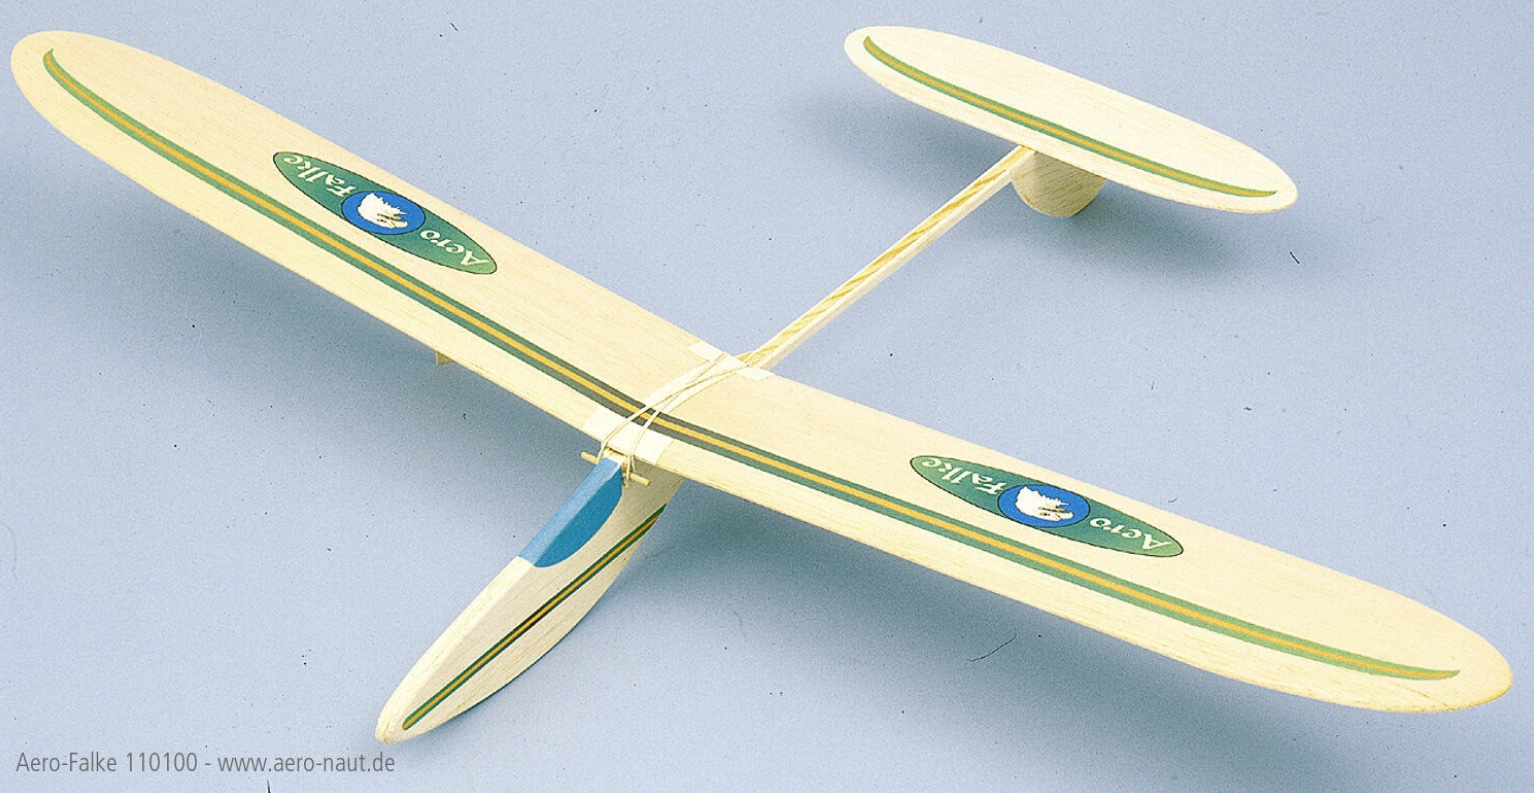 aero-naut-110100-1-Aero-Falke-Freiflugmodell-Balsaholz-Segler